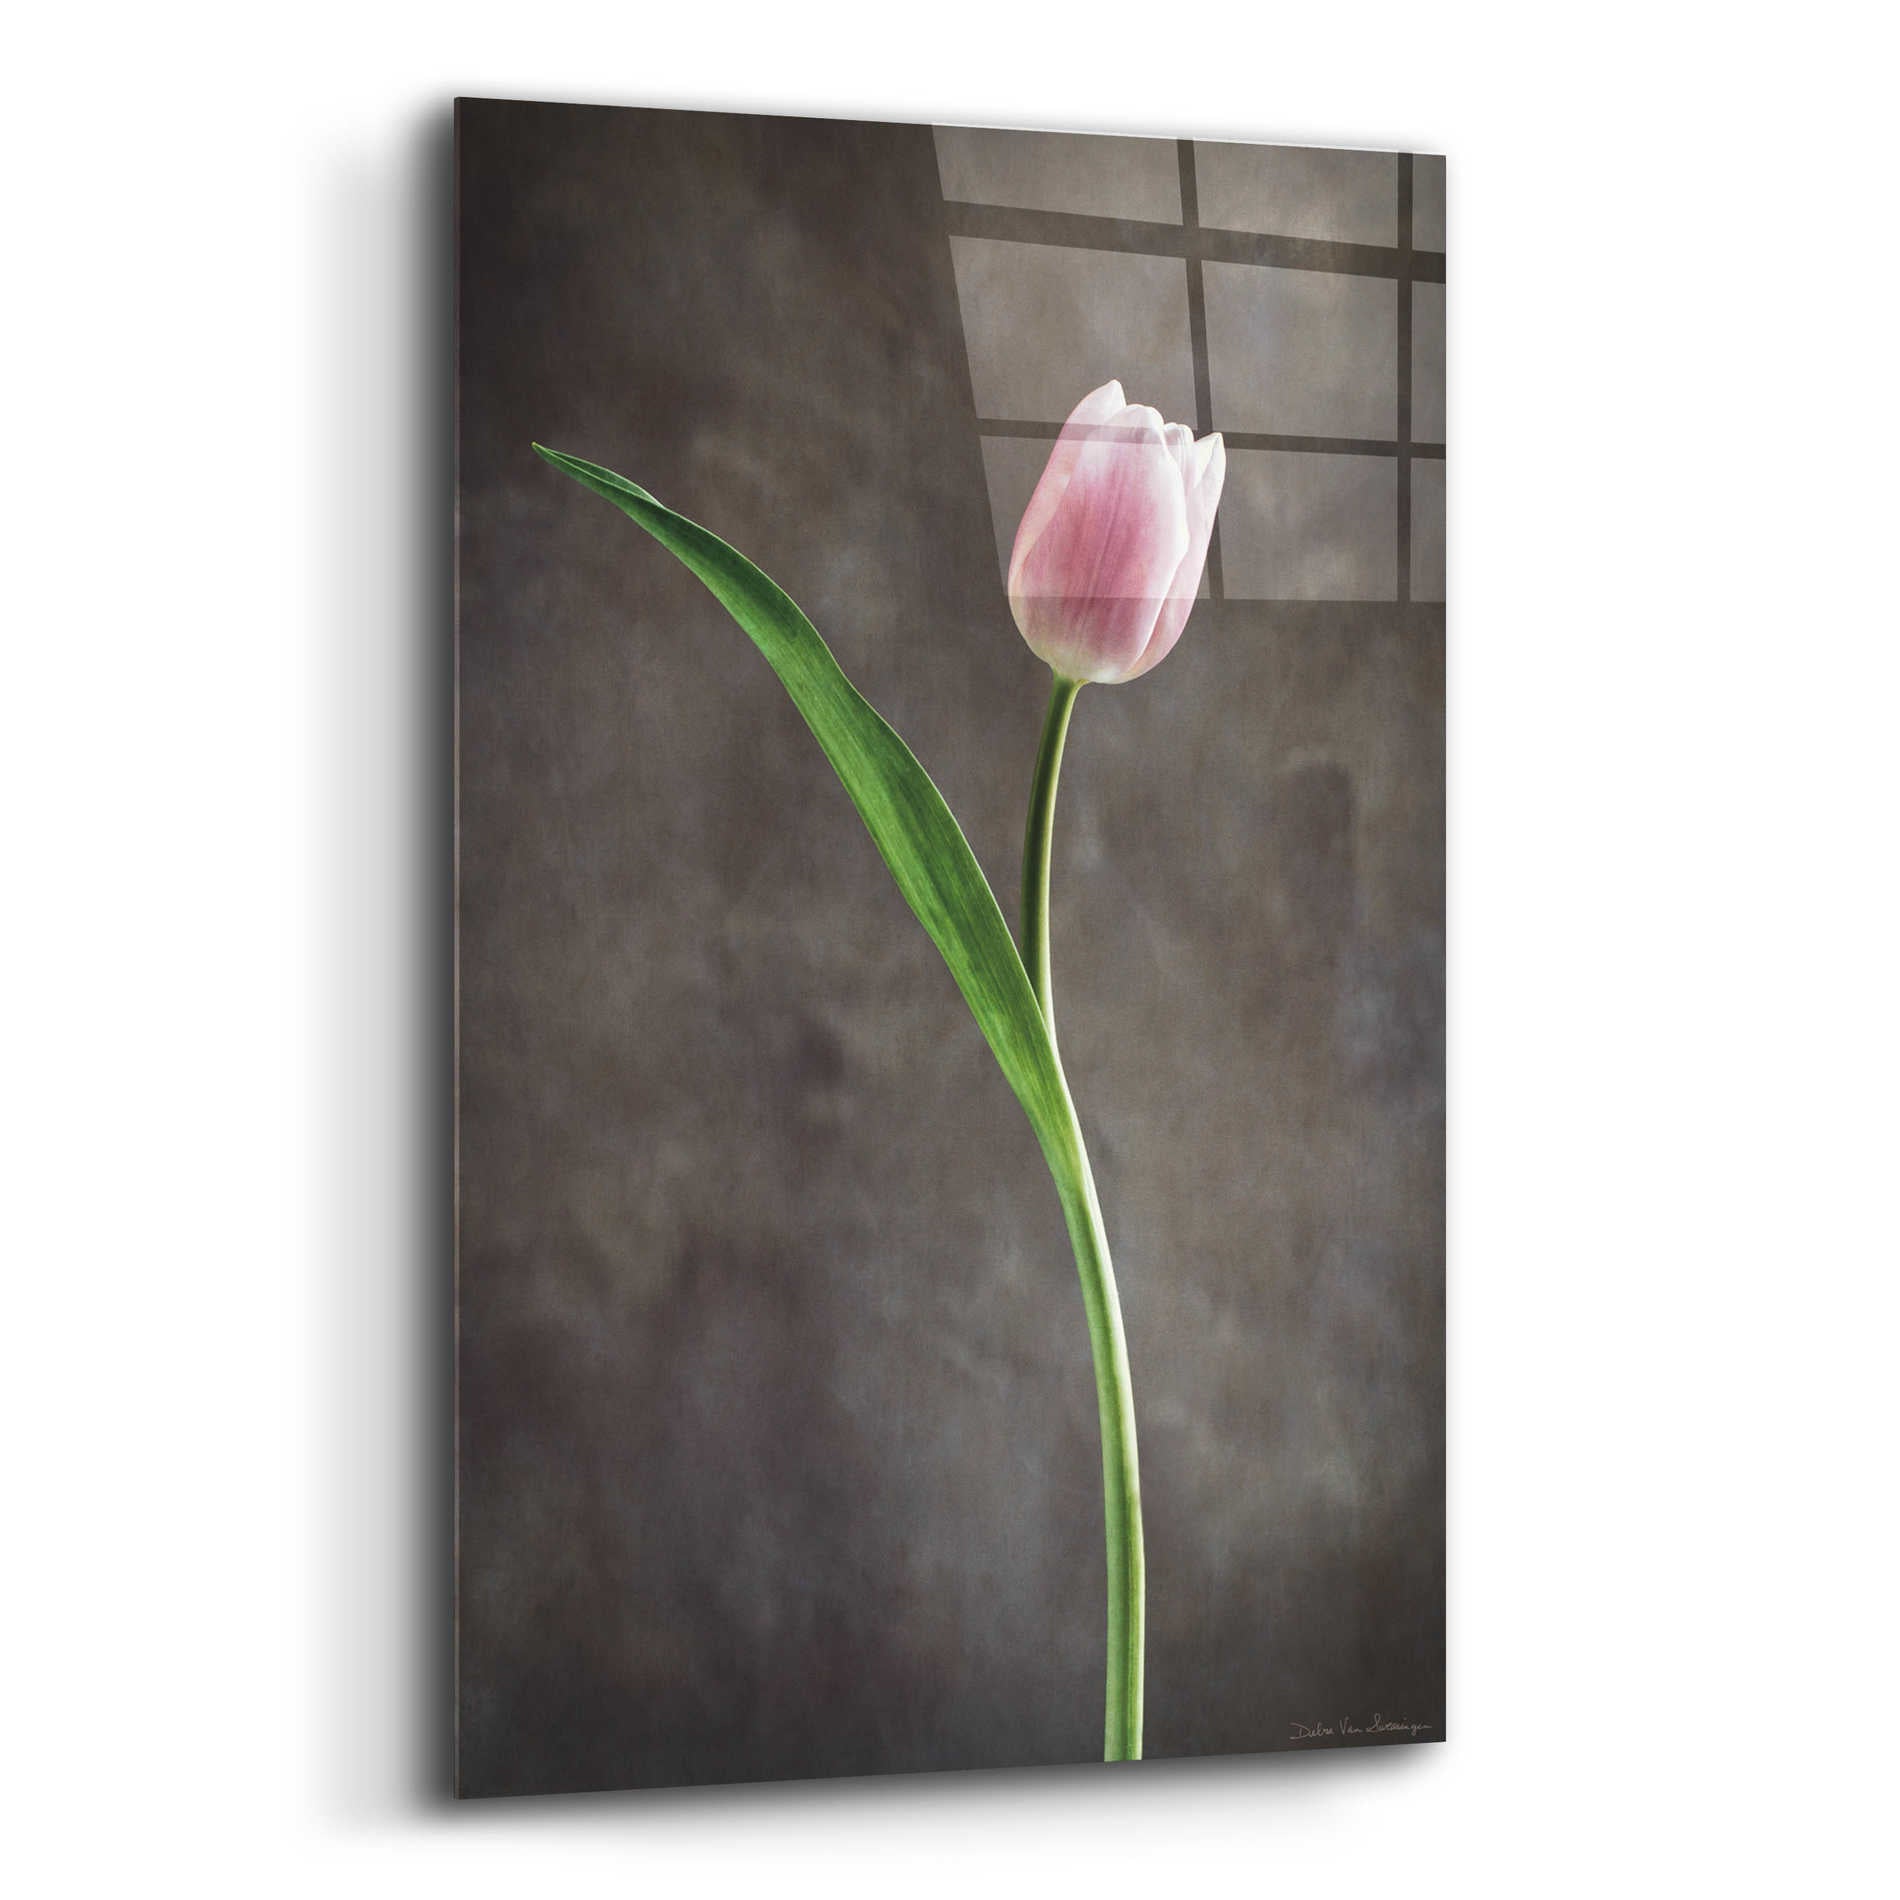 Epic Art 'Spring Tulips II' by Debra Van Swearingen, Acrylic Glass Wall Art,12x16